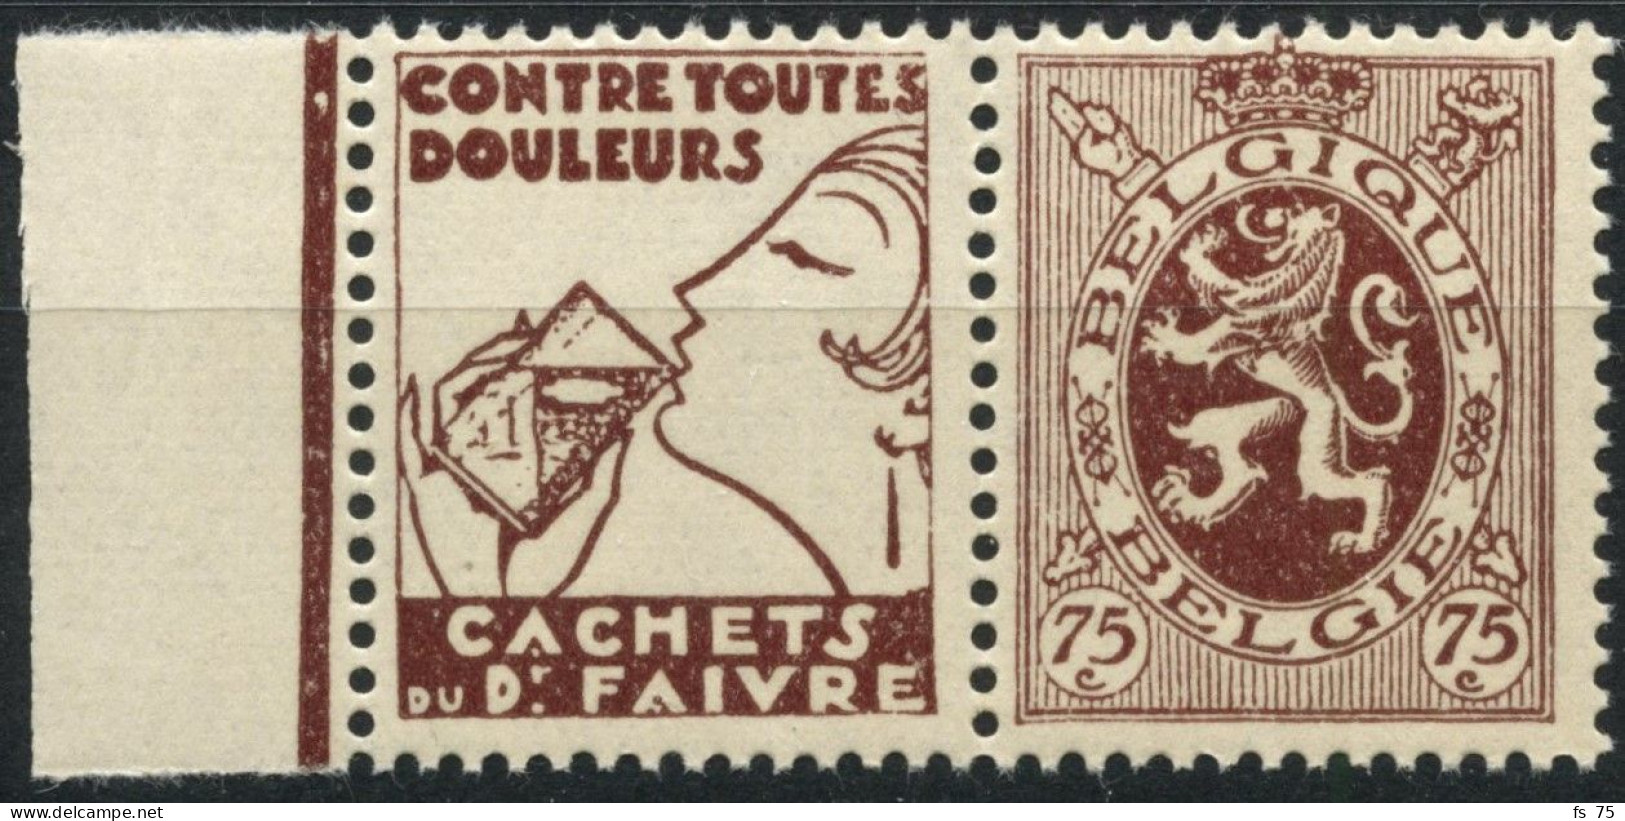 BELGIQUE - COB PU 55 - 75C LION HERALDIQUE TIMBRE PUBLICITAIRE "FAIVRE" - NEUF - Mint